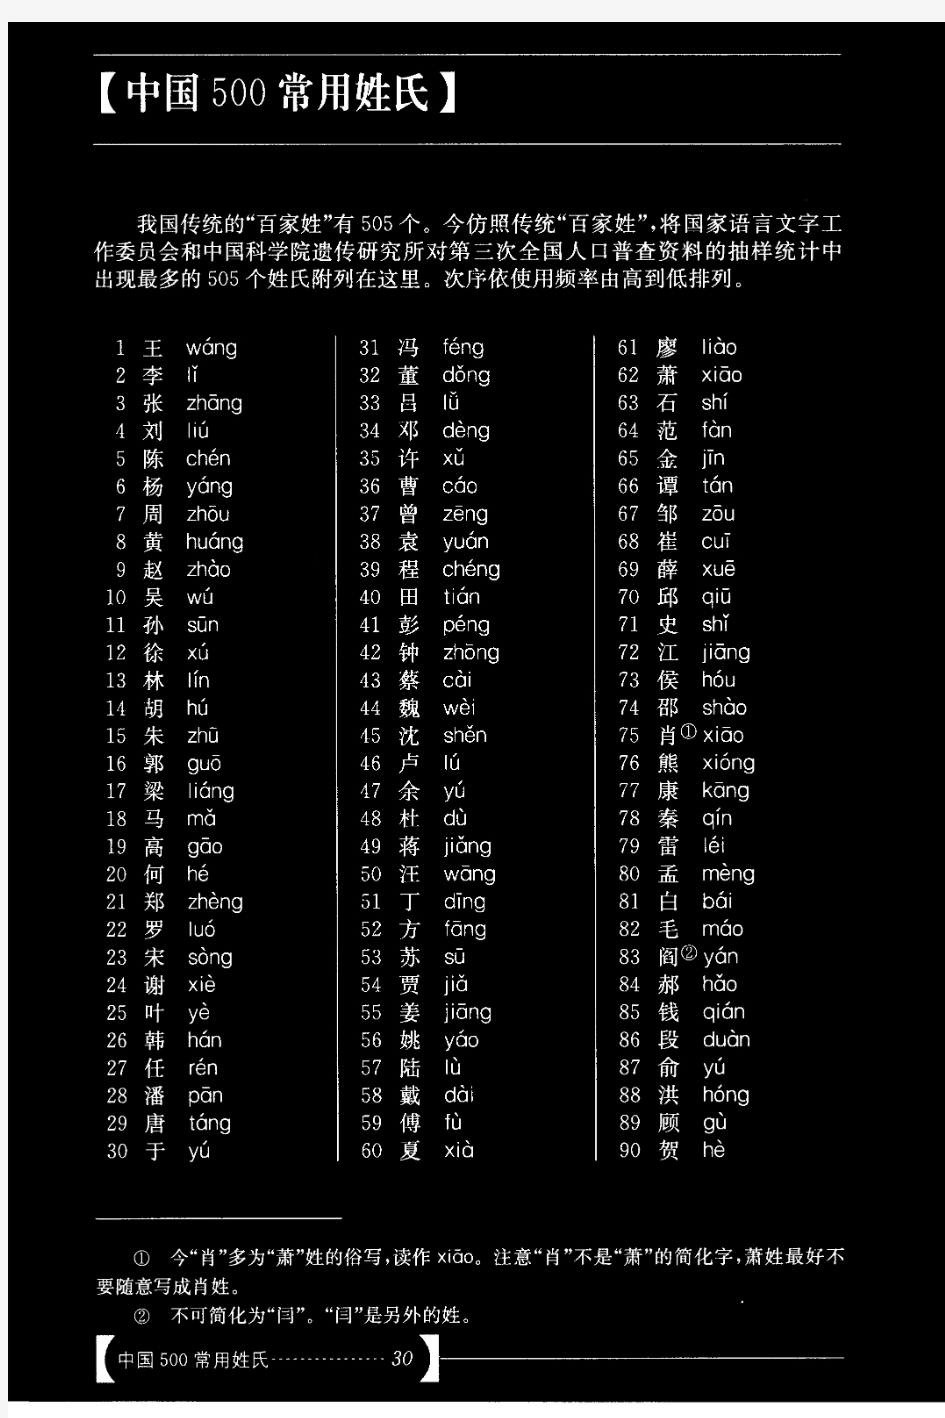 中国500常用姓氏